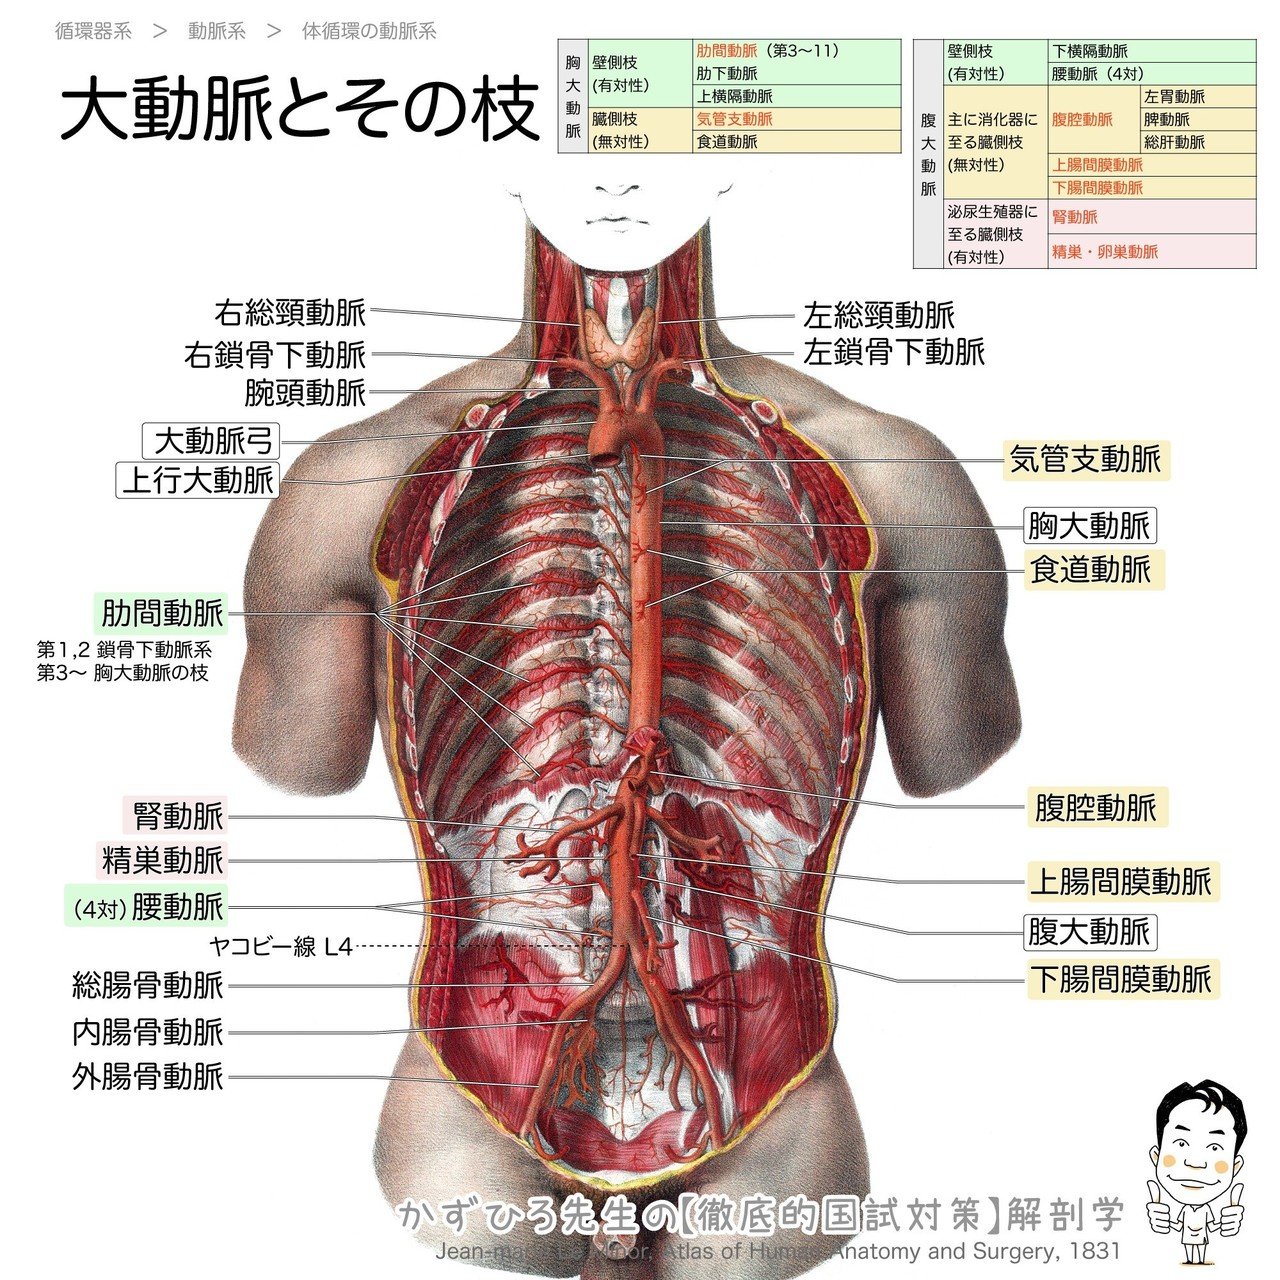 2 3 1 循環器系 動脈系 解説 かずひろ先生 黒澤一弘 解剖学 Note